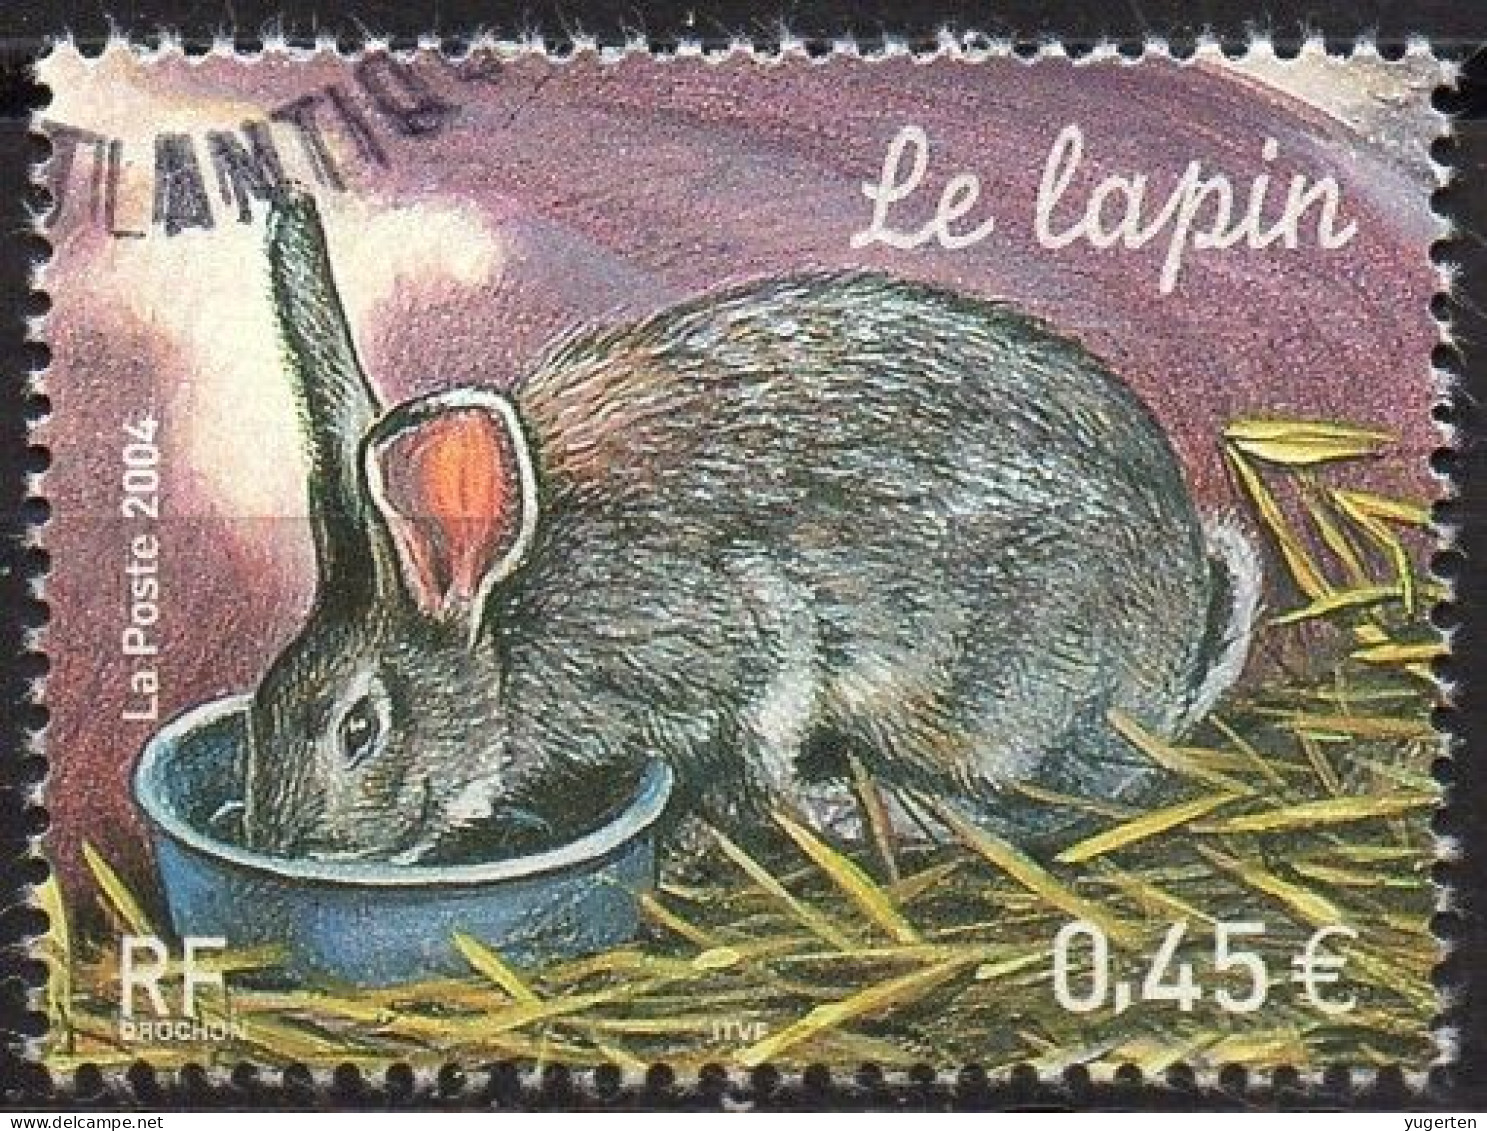 FRANCE 2004 - 1v - Used - Oblitéré - Lapin - Rabbit - Kaninchen - Conejo - Coniglio - Rabbits - Lapins - Conigli - - Konijnen